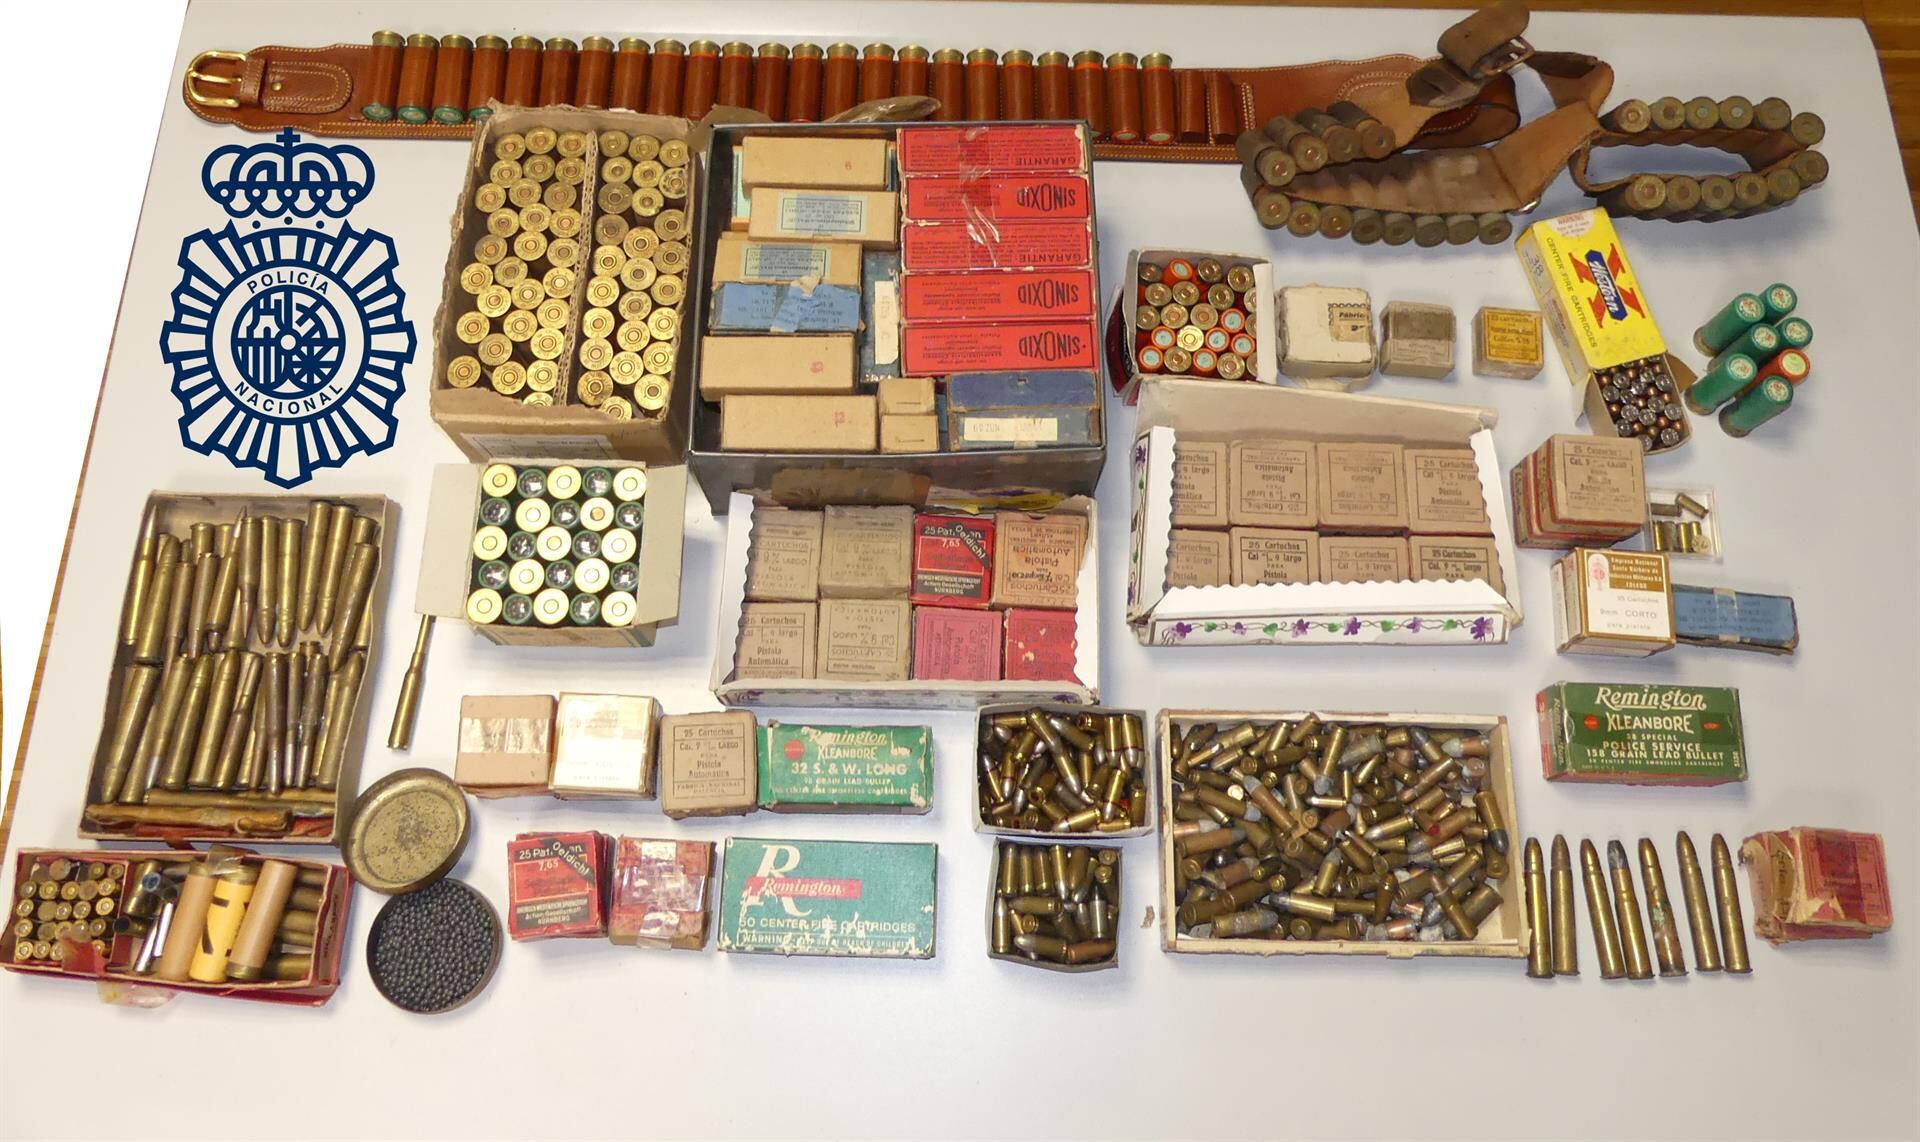 Vieja munición hallada en un trastero en Vigo, junto a una treintena de armas de fuego que pertenecieron a un militar fallecido hace 27 años.